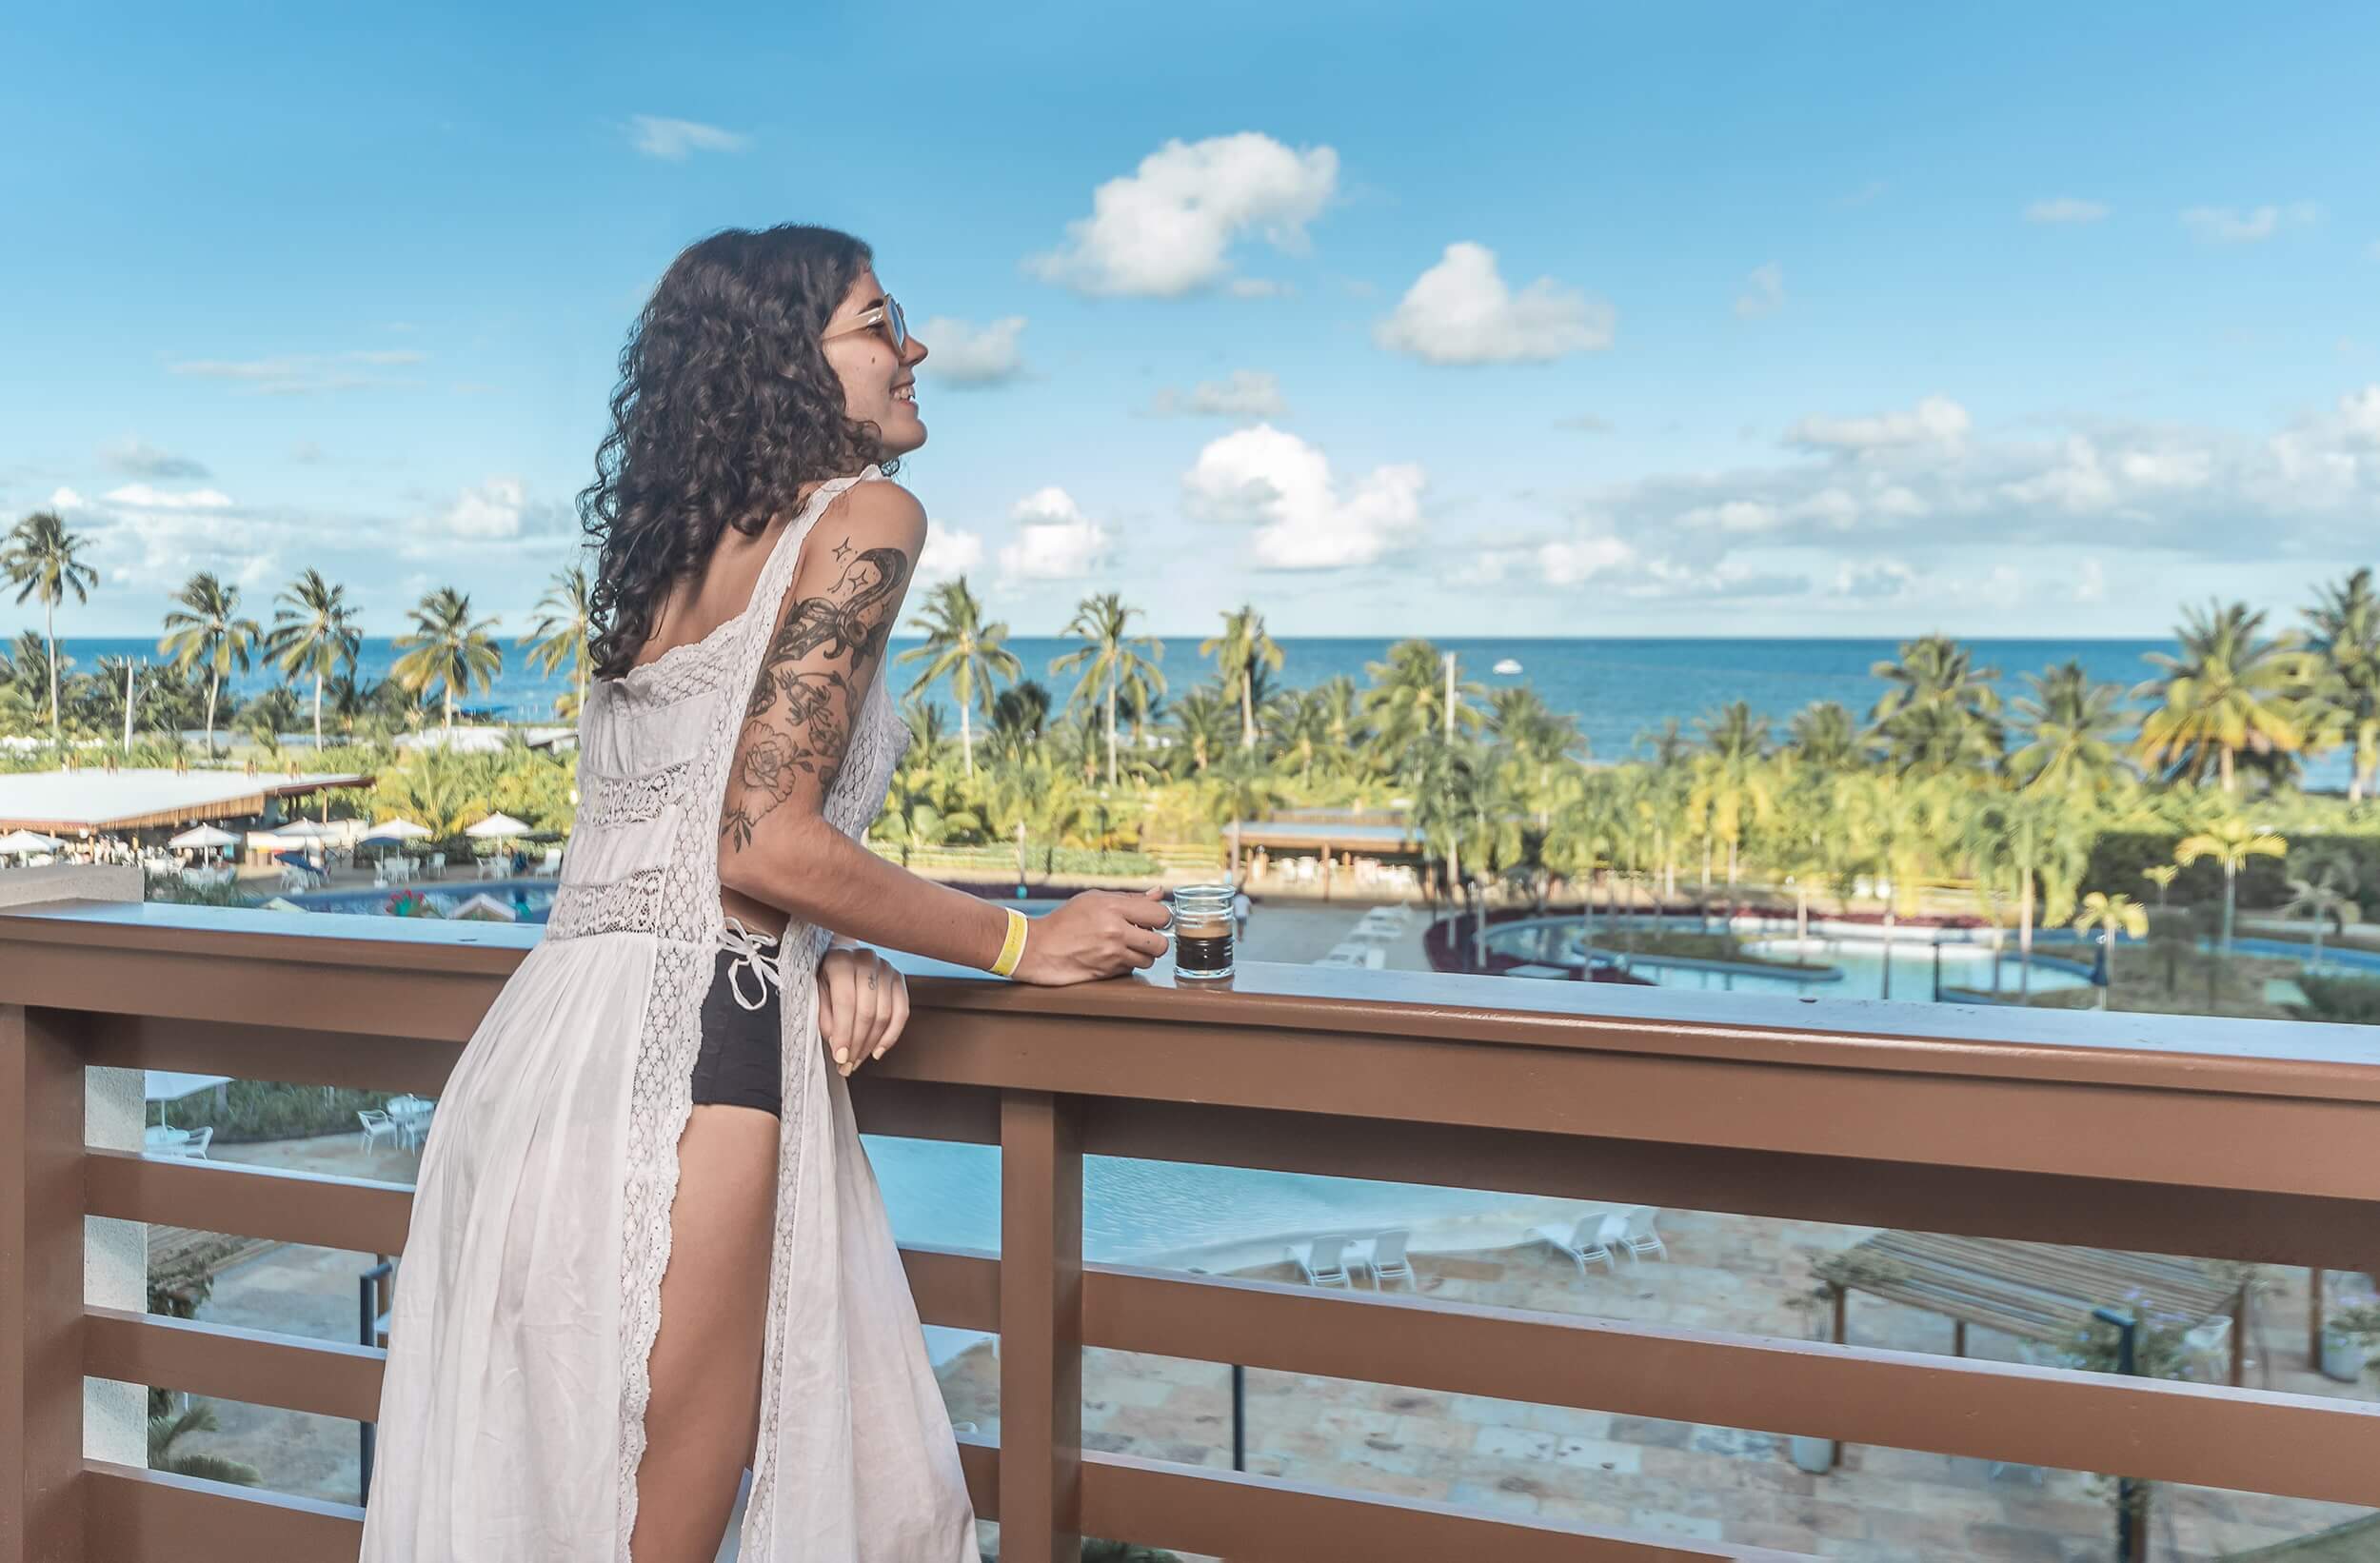 Uma mulher aprecia um momento tranquilo em uma sacada no Japaratinga Lounge Resort, segurando uma xícara de café. Ela contempla a deslumbrante vista das piscinas do resort e do mar azul que se estende até o horizonte.